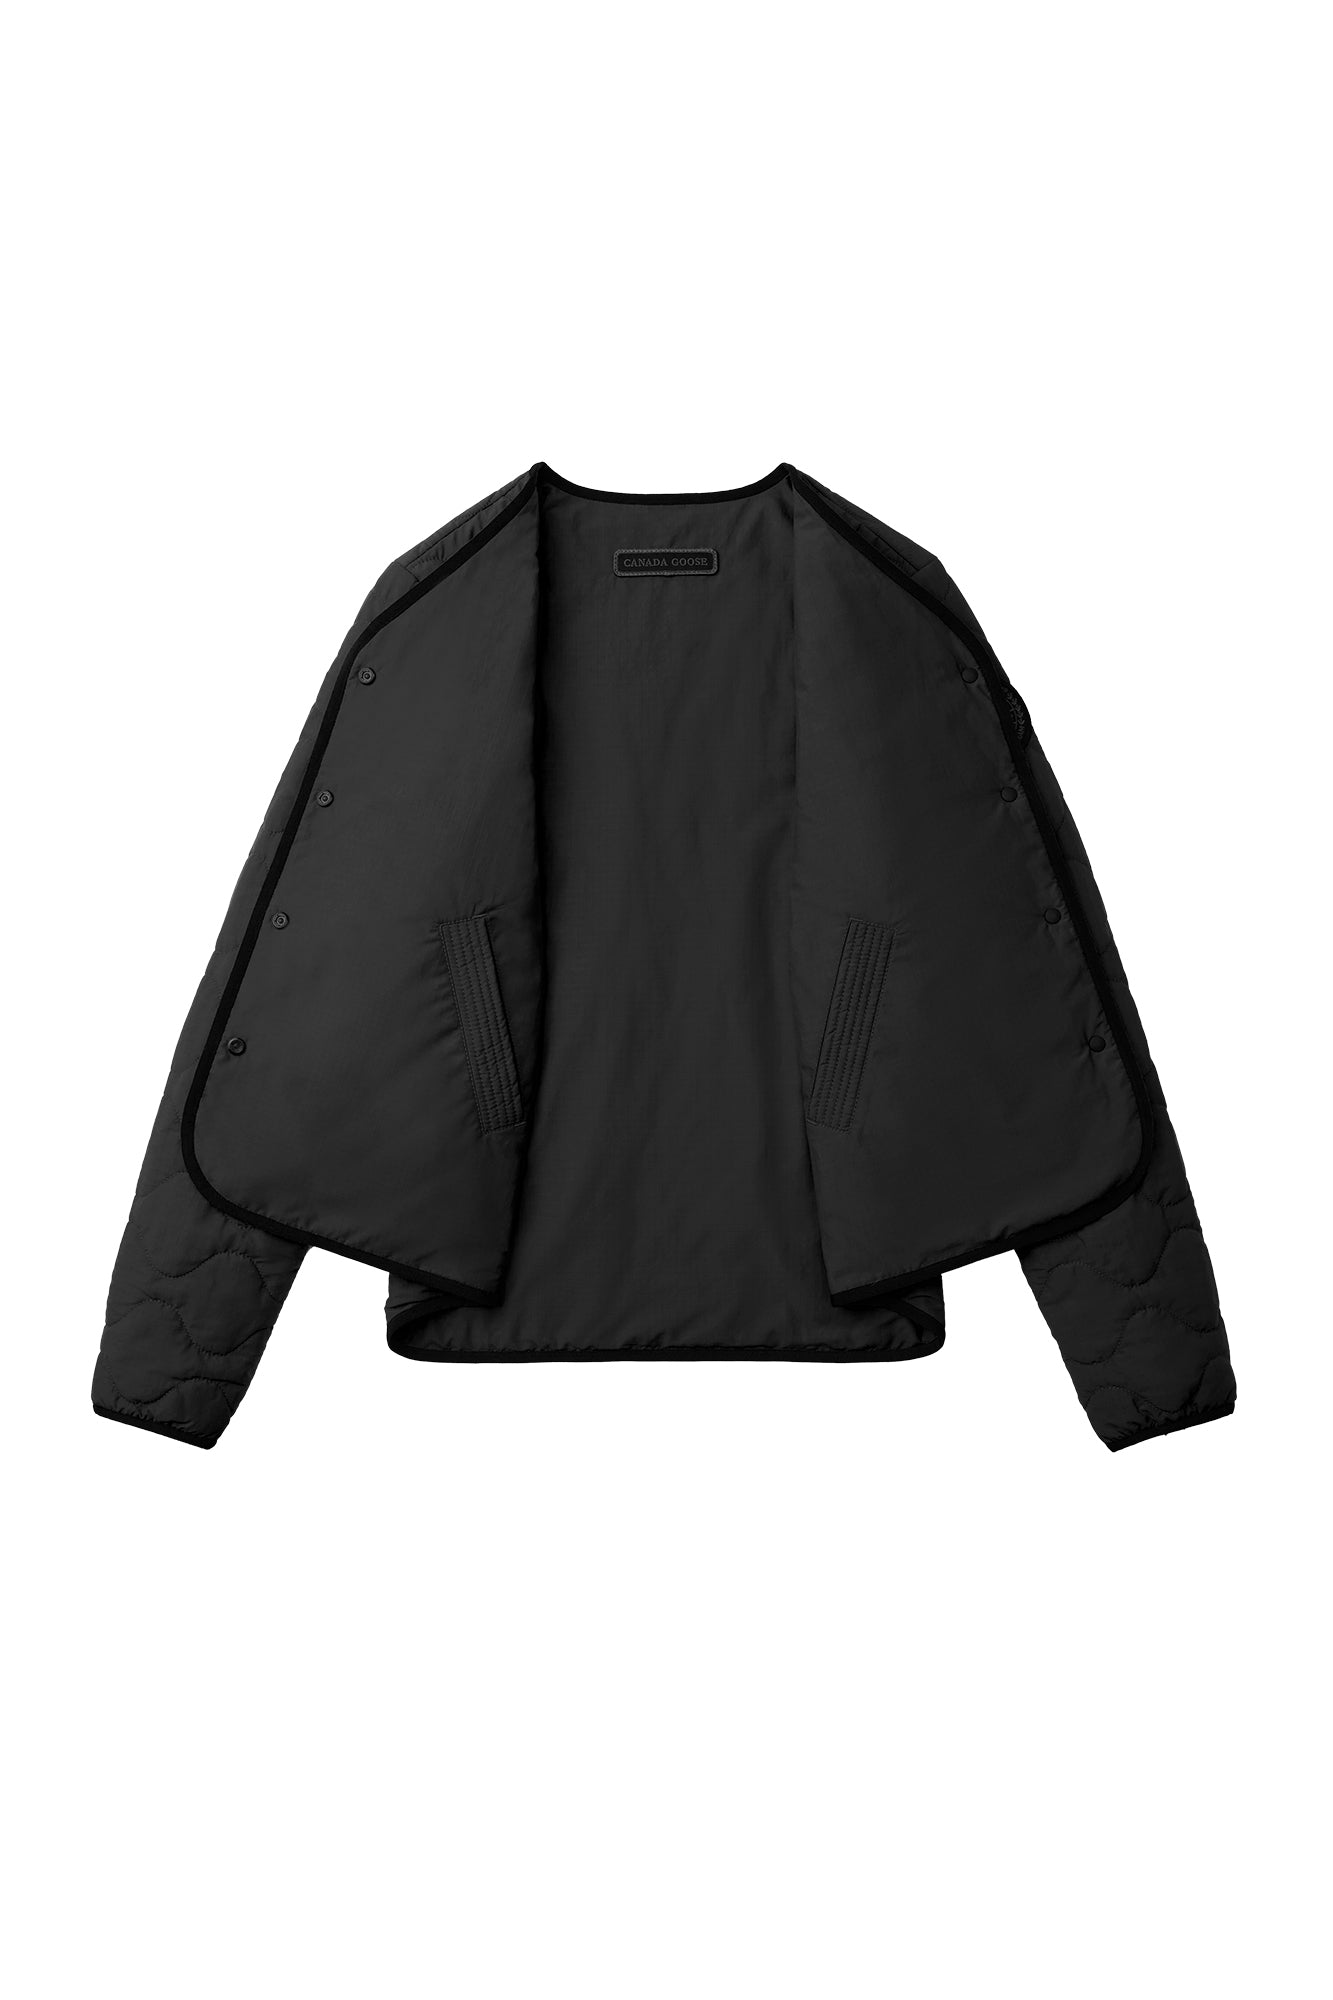 Annex Liner Jacket - Black